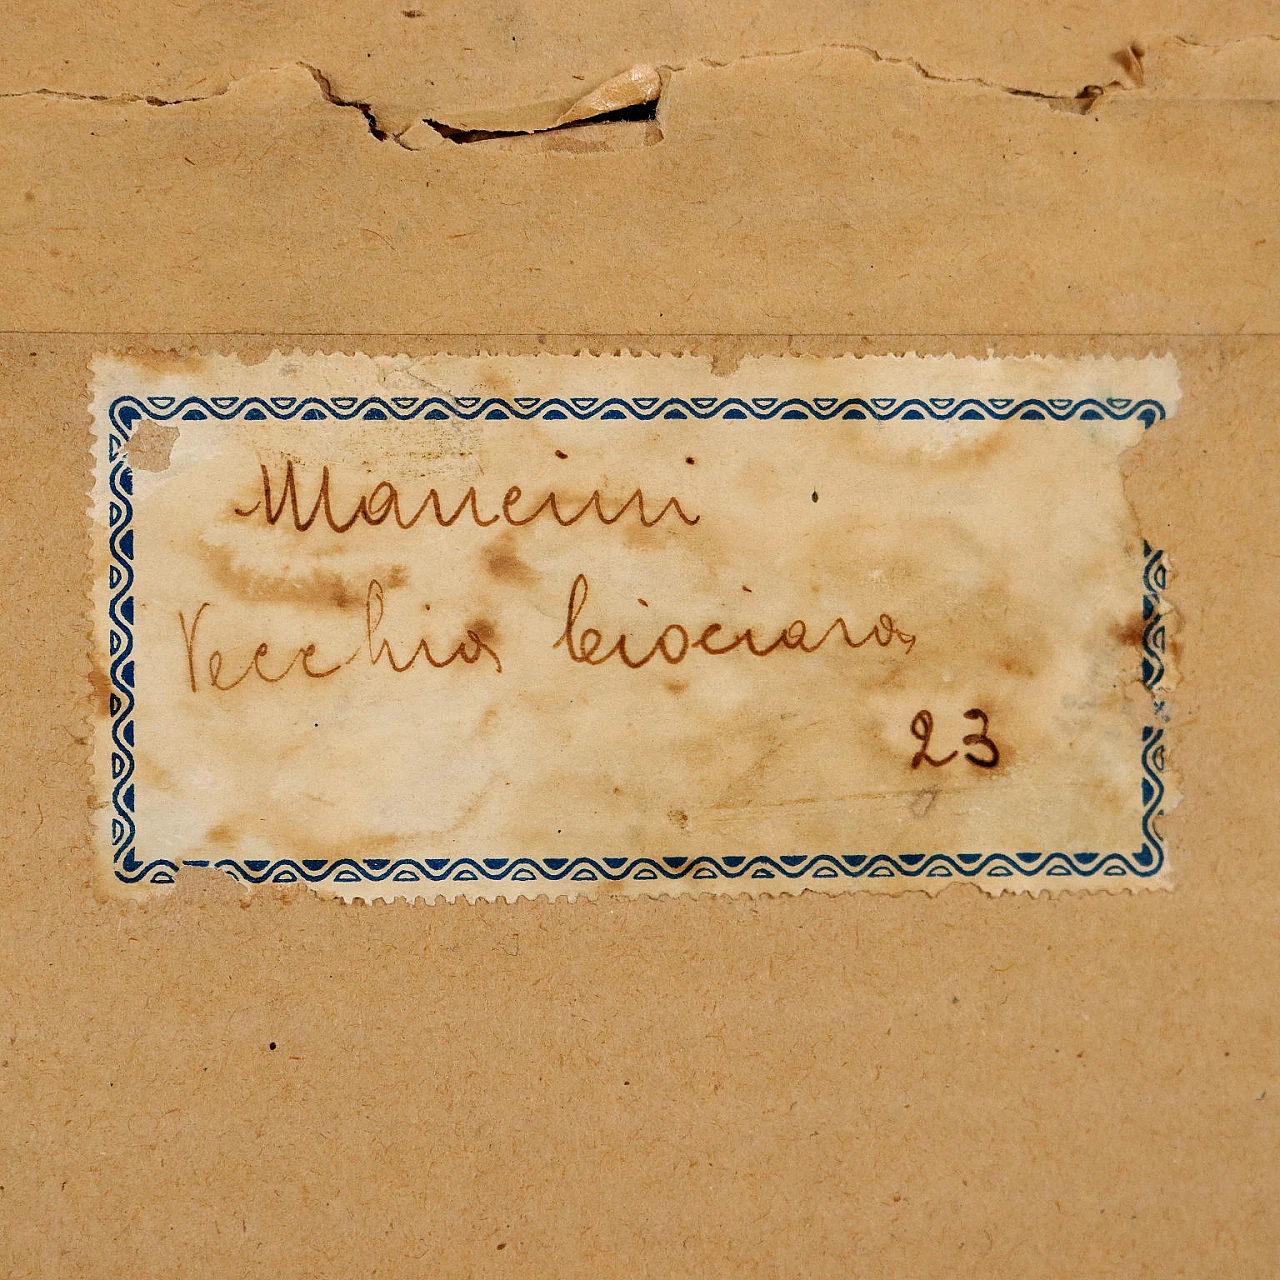 Antonio Mancini, Vecchia ciociara, pastelli su carta, 1910 10